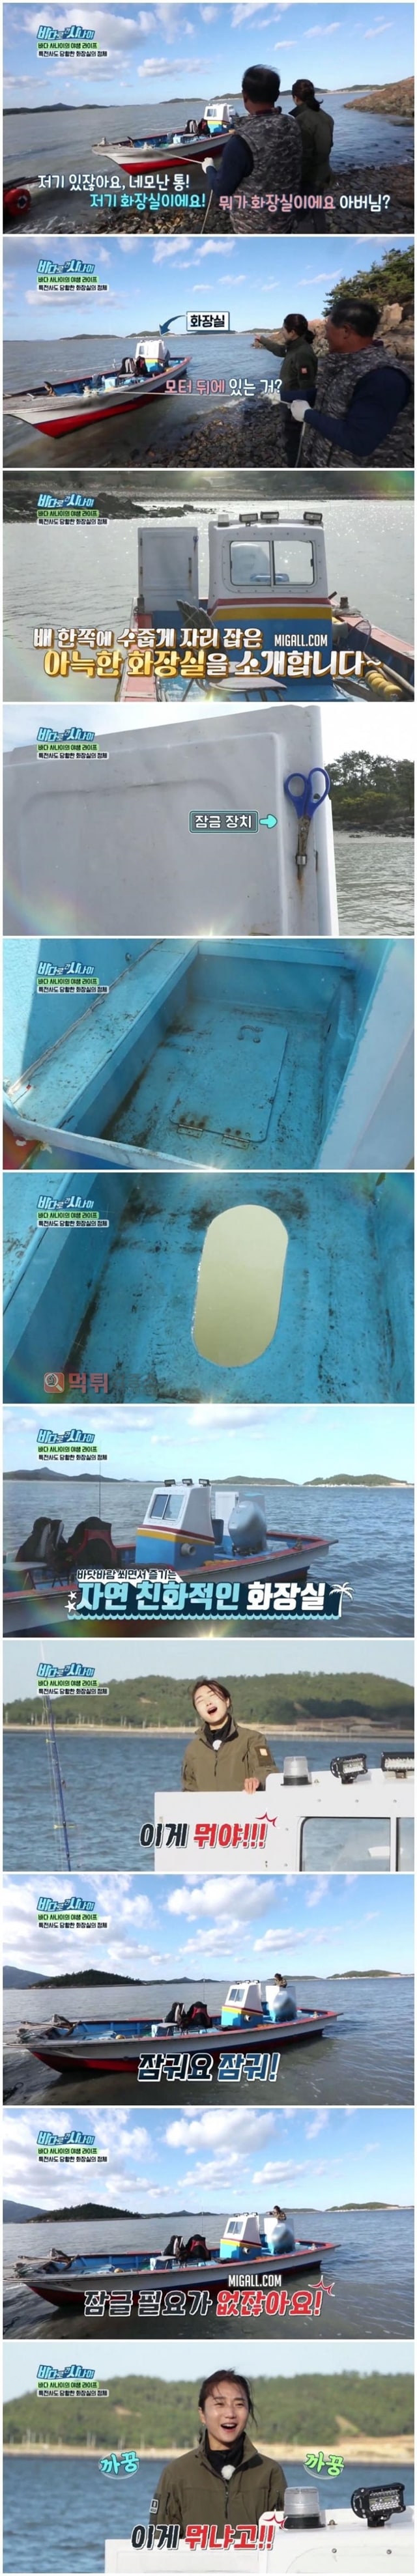 먹튀검증소 유머 바닷바람 쐬면서 즐기는 자연 친화적인 화장실